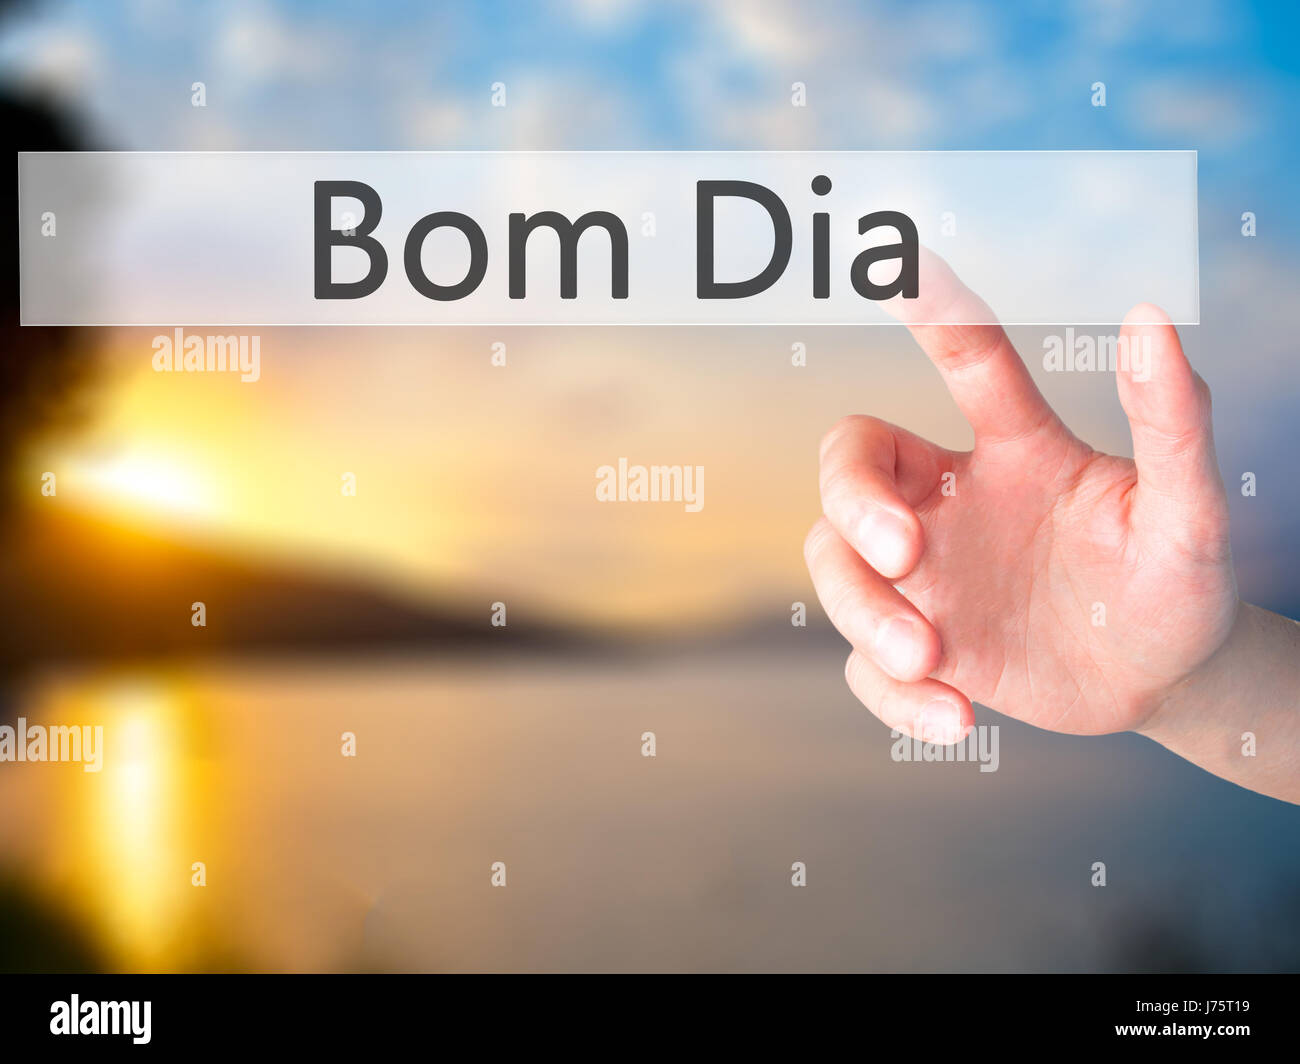 Bom Dia (In Portugiesisch - guten Morgen) - Hand drücken einer Taste auf  unscharfen Hintergrund Konzept. Wirtschaft, Technologie, Internet-Konzept.  Stock Foto Stockfotografie - Alamy